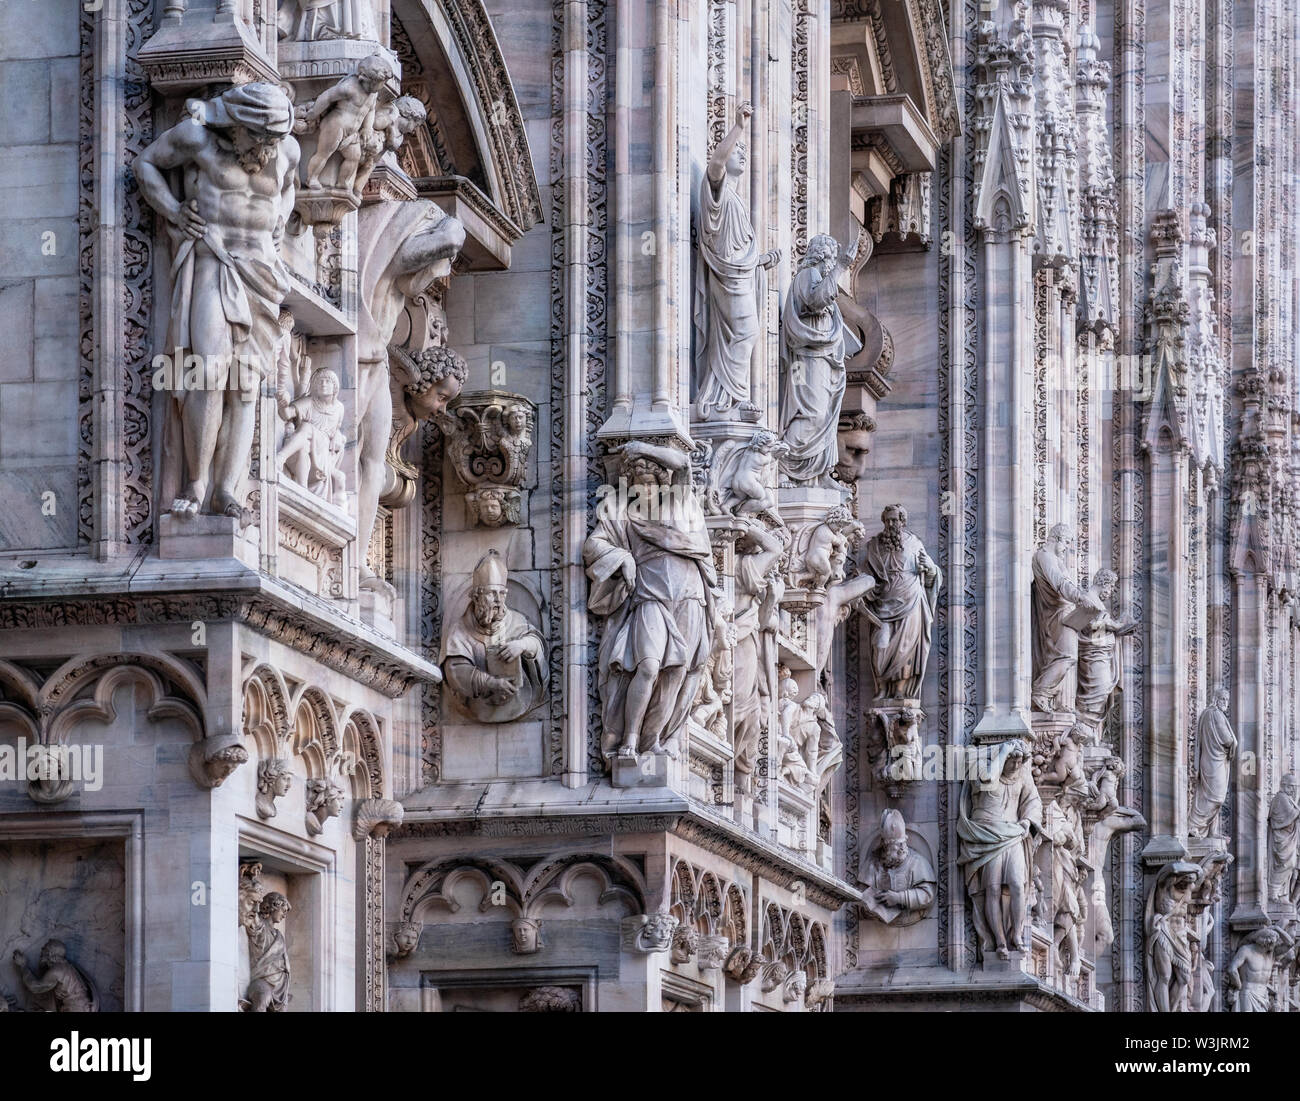 Fachada de la Catedral con detalles de mármol, estatuas y obras, Milán, Italia, Foto de stock